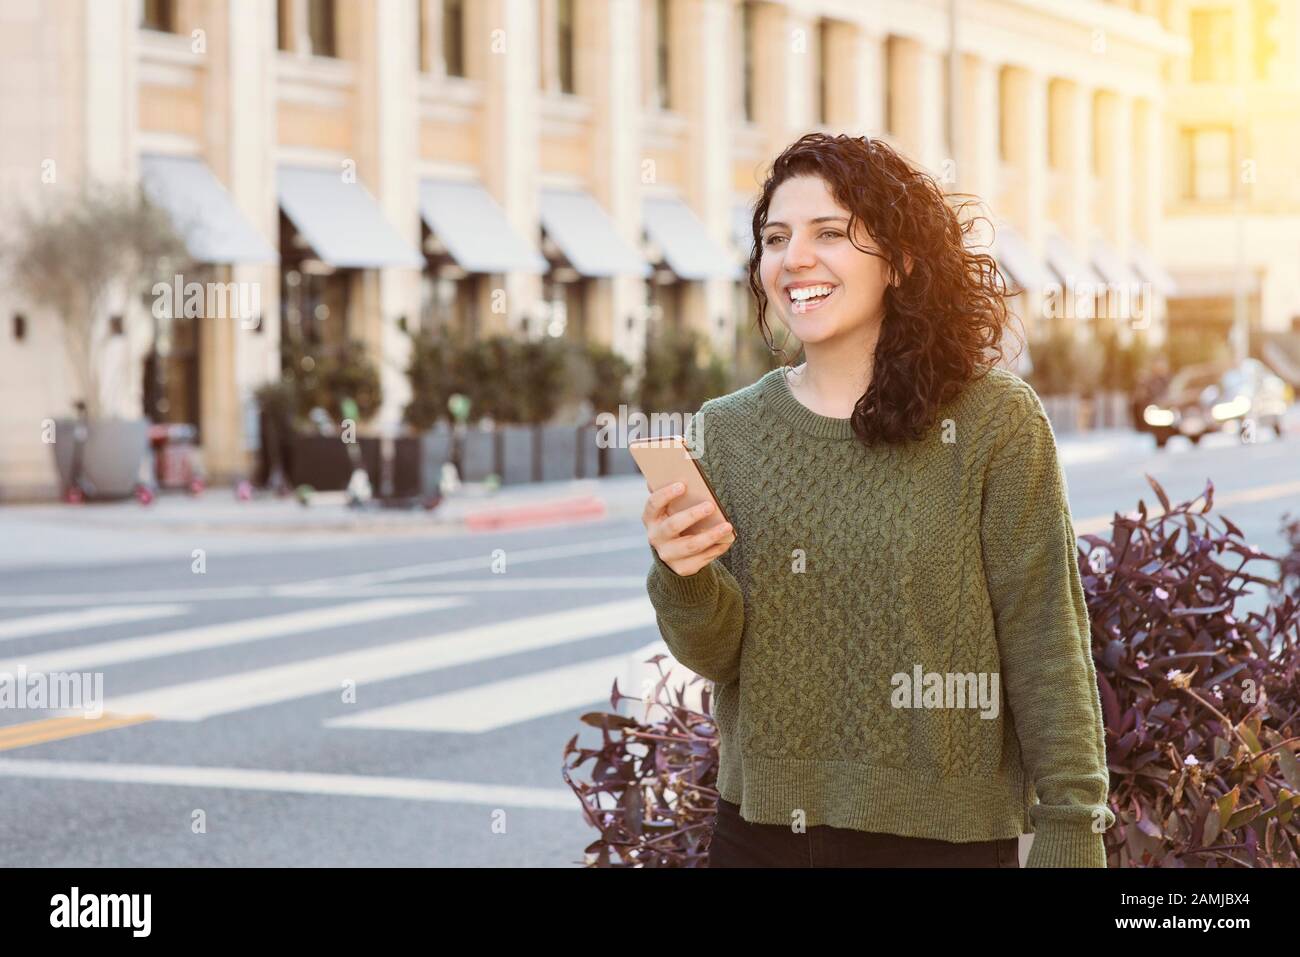 La donna caucasica tiene il suo telefono cellulare in attesa di ab uber in città - luce Calda di giorno - Concetto felice utilizzando la tecnologia Foto Stock